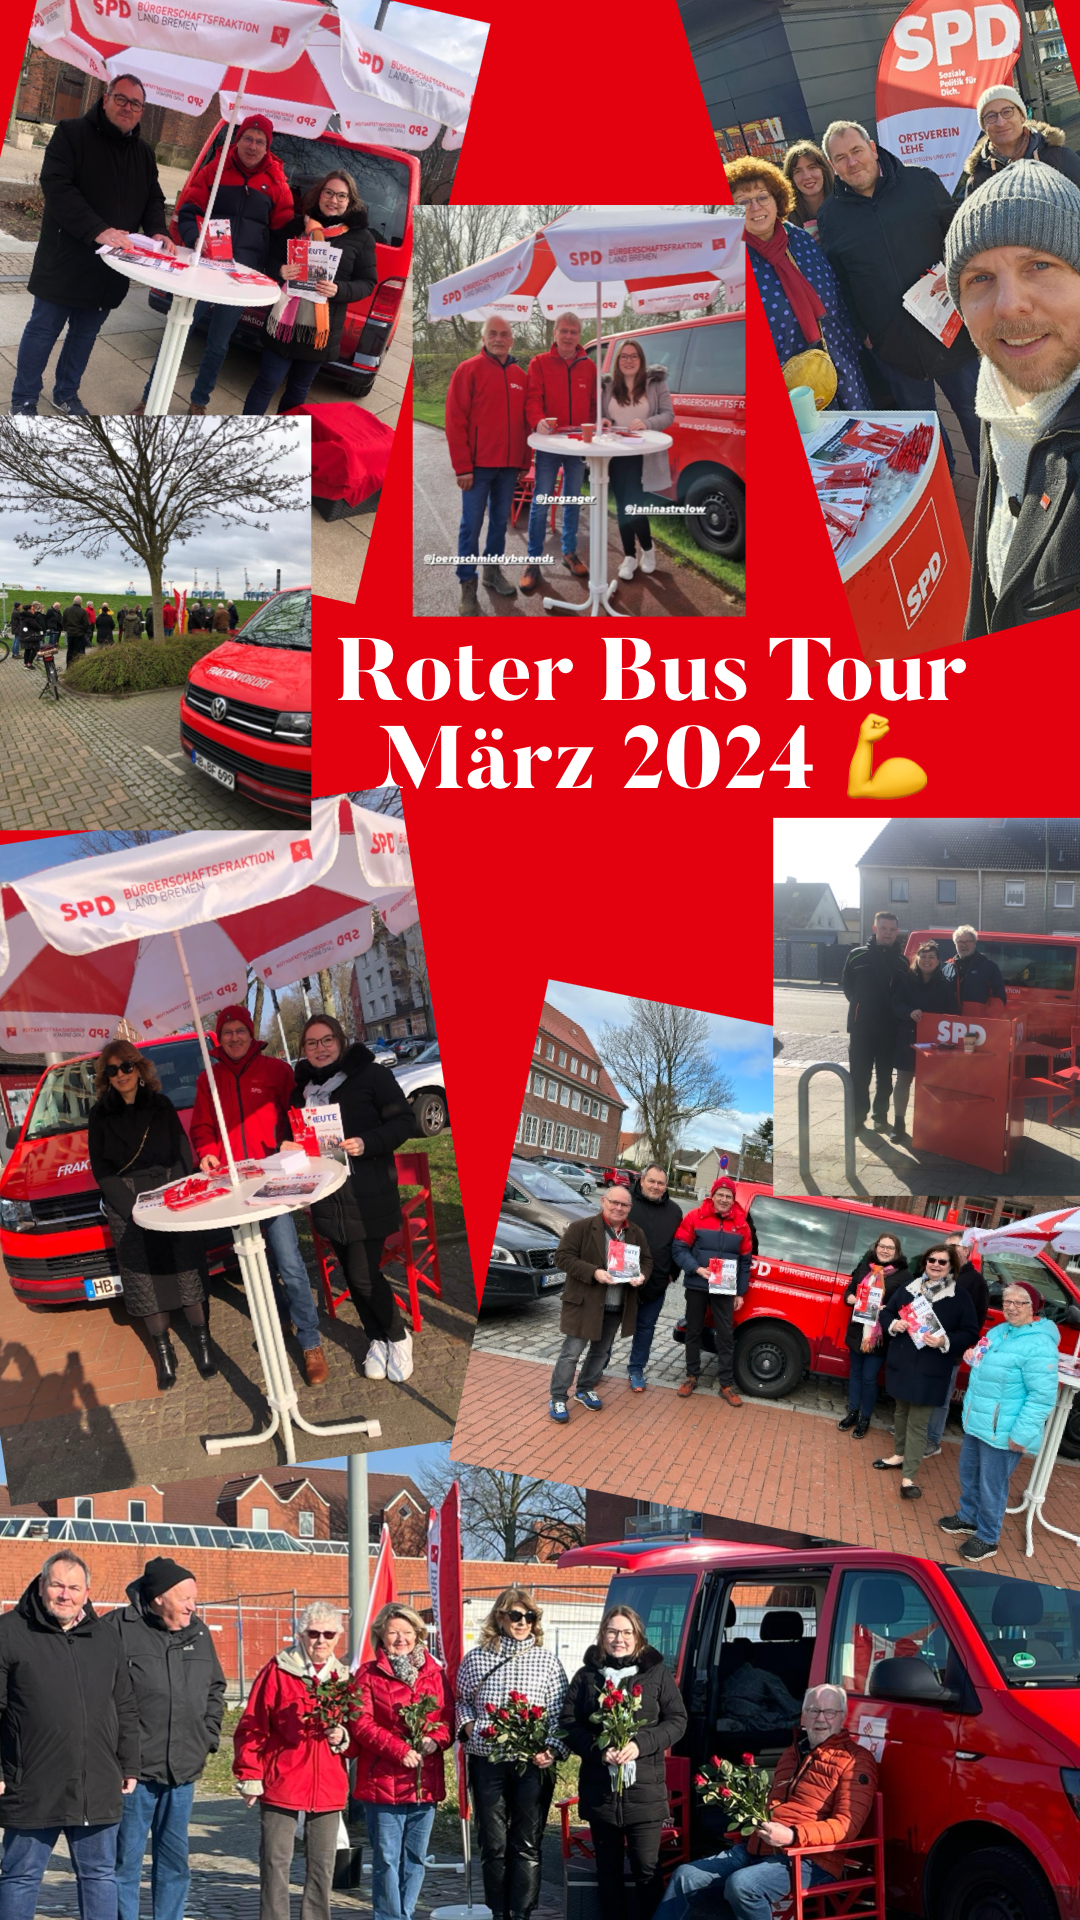  Roter Bus Tour 2024 – wir haben ein offenes Ohr! 